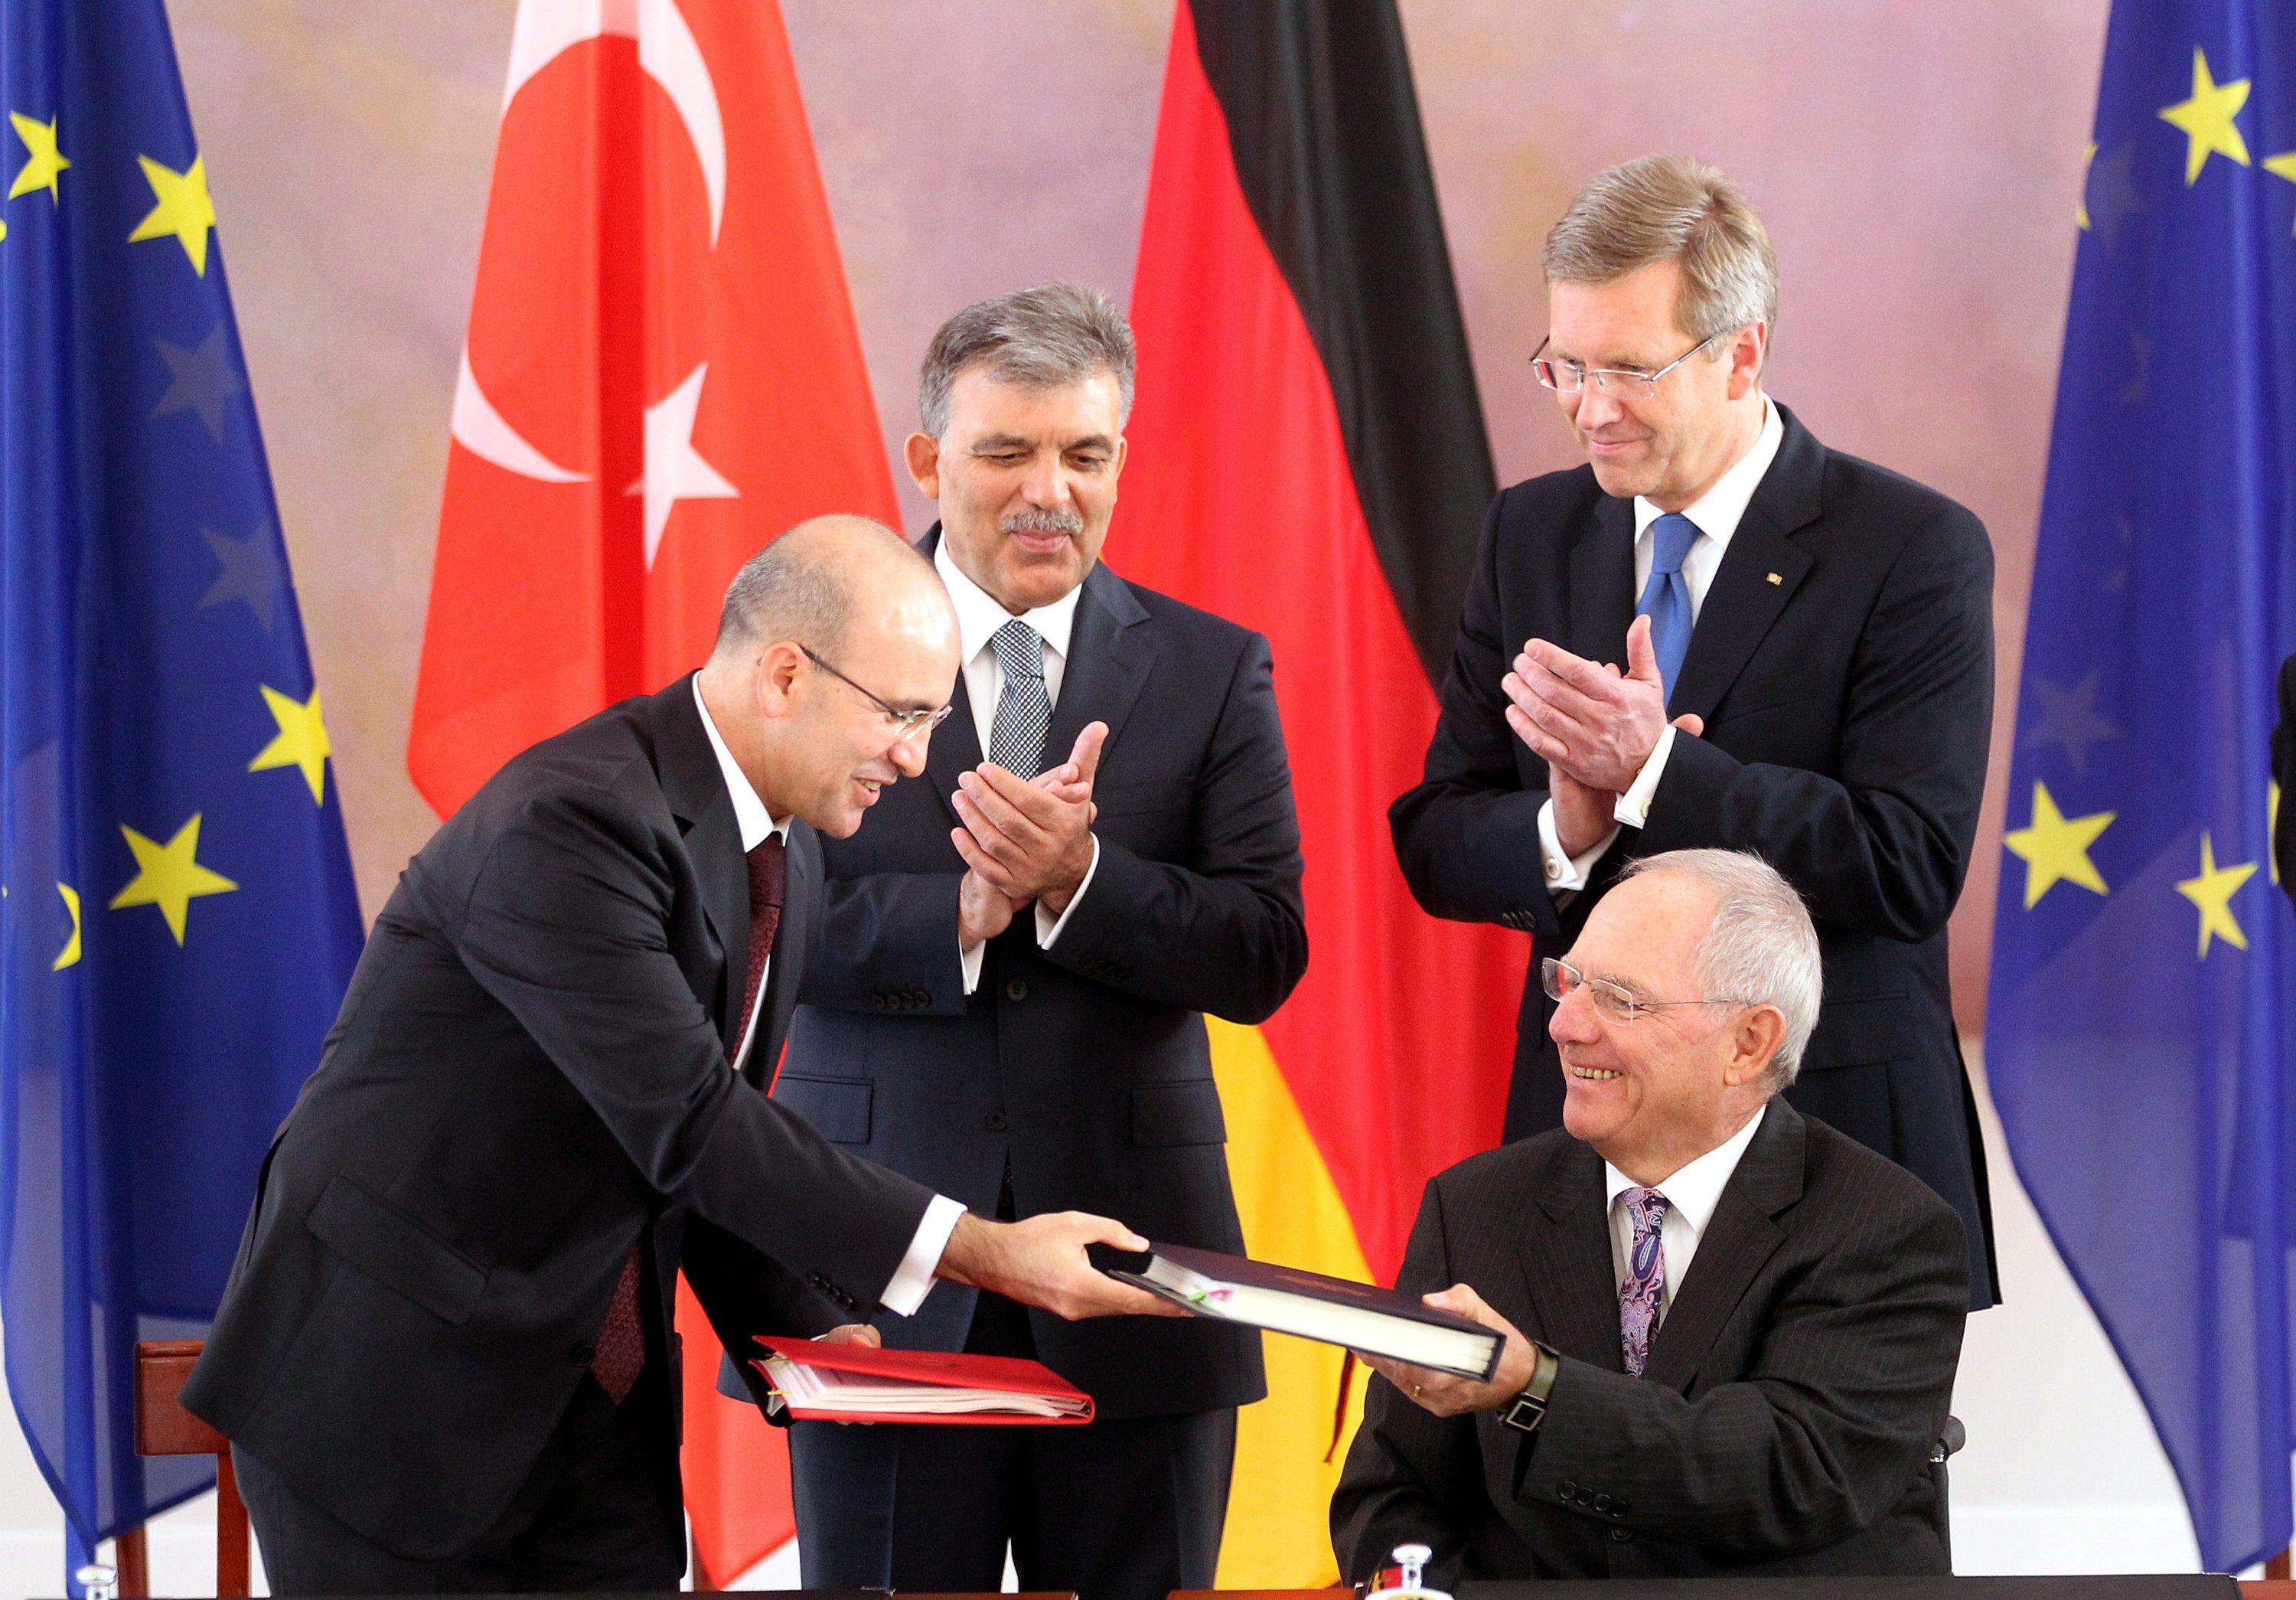 Γερμανία: Ο Γκιουλ επιμένει στην πλήρη ένταξη της Τουρκίας στην ΕΕ